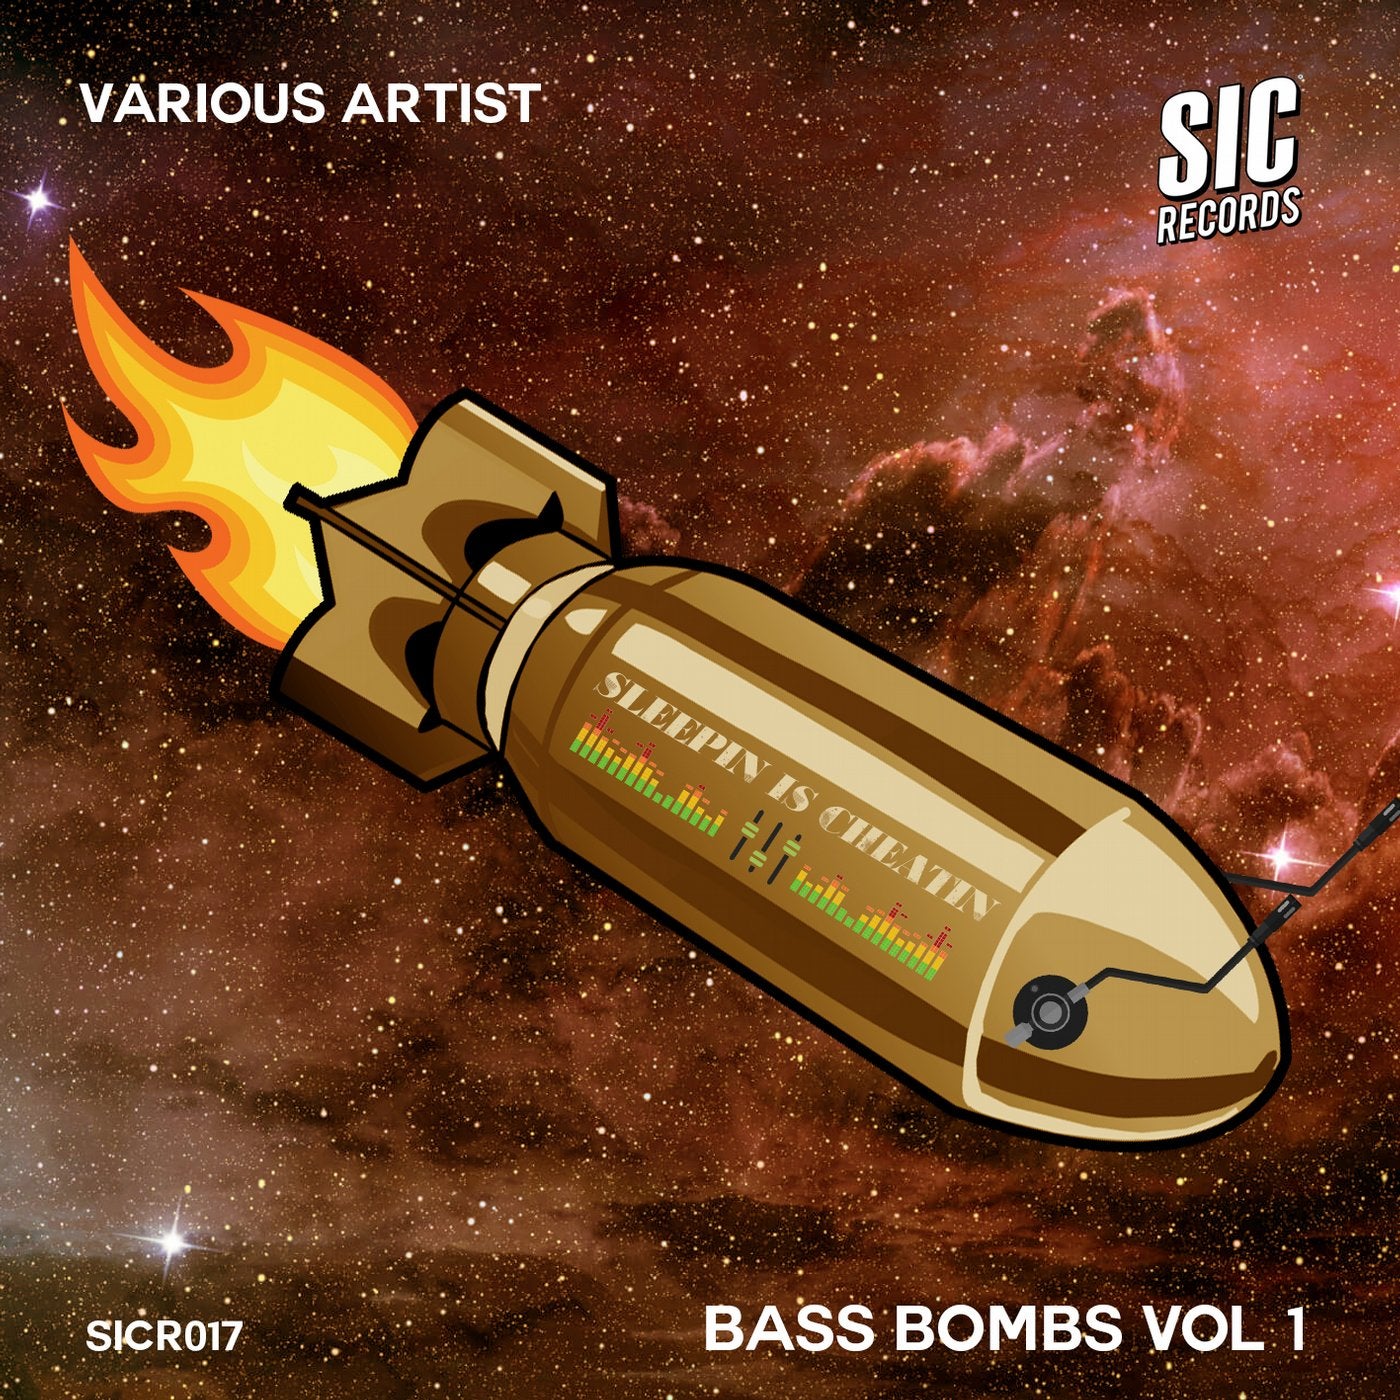 Bass Bombs, Vol. 1